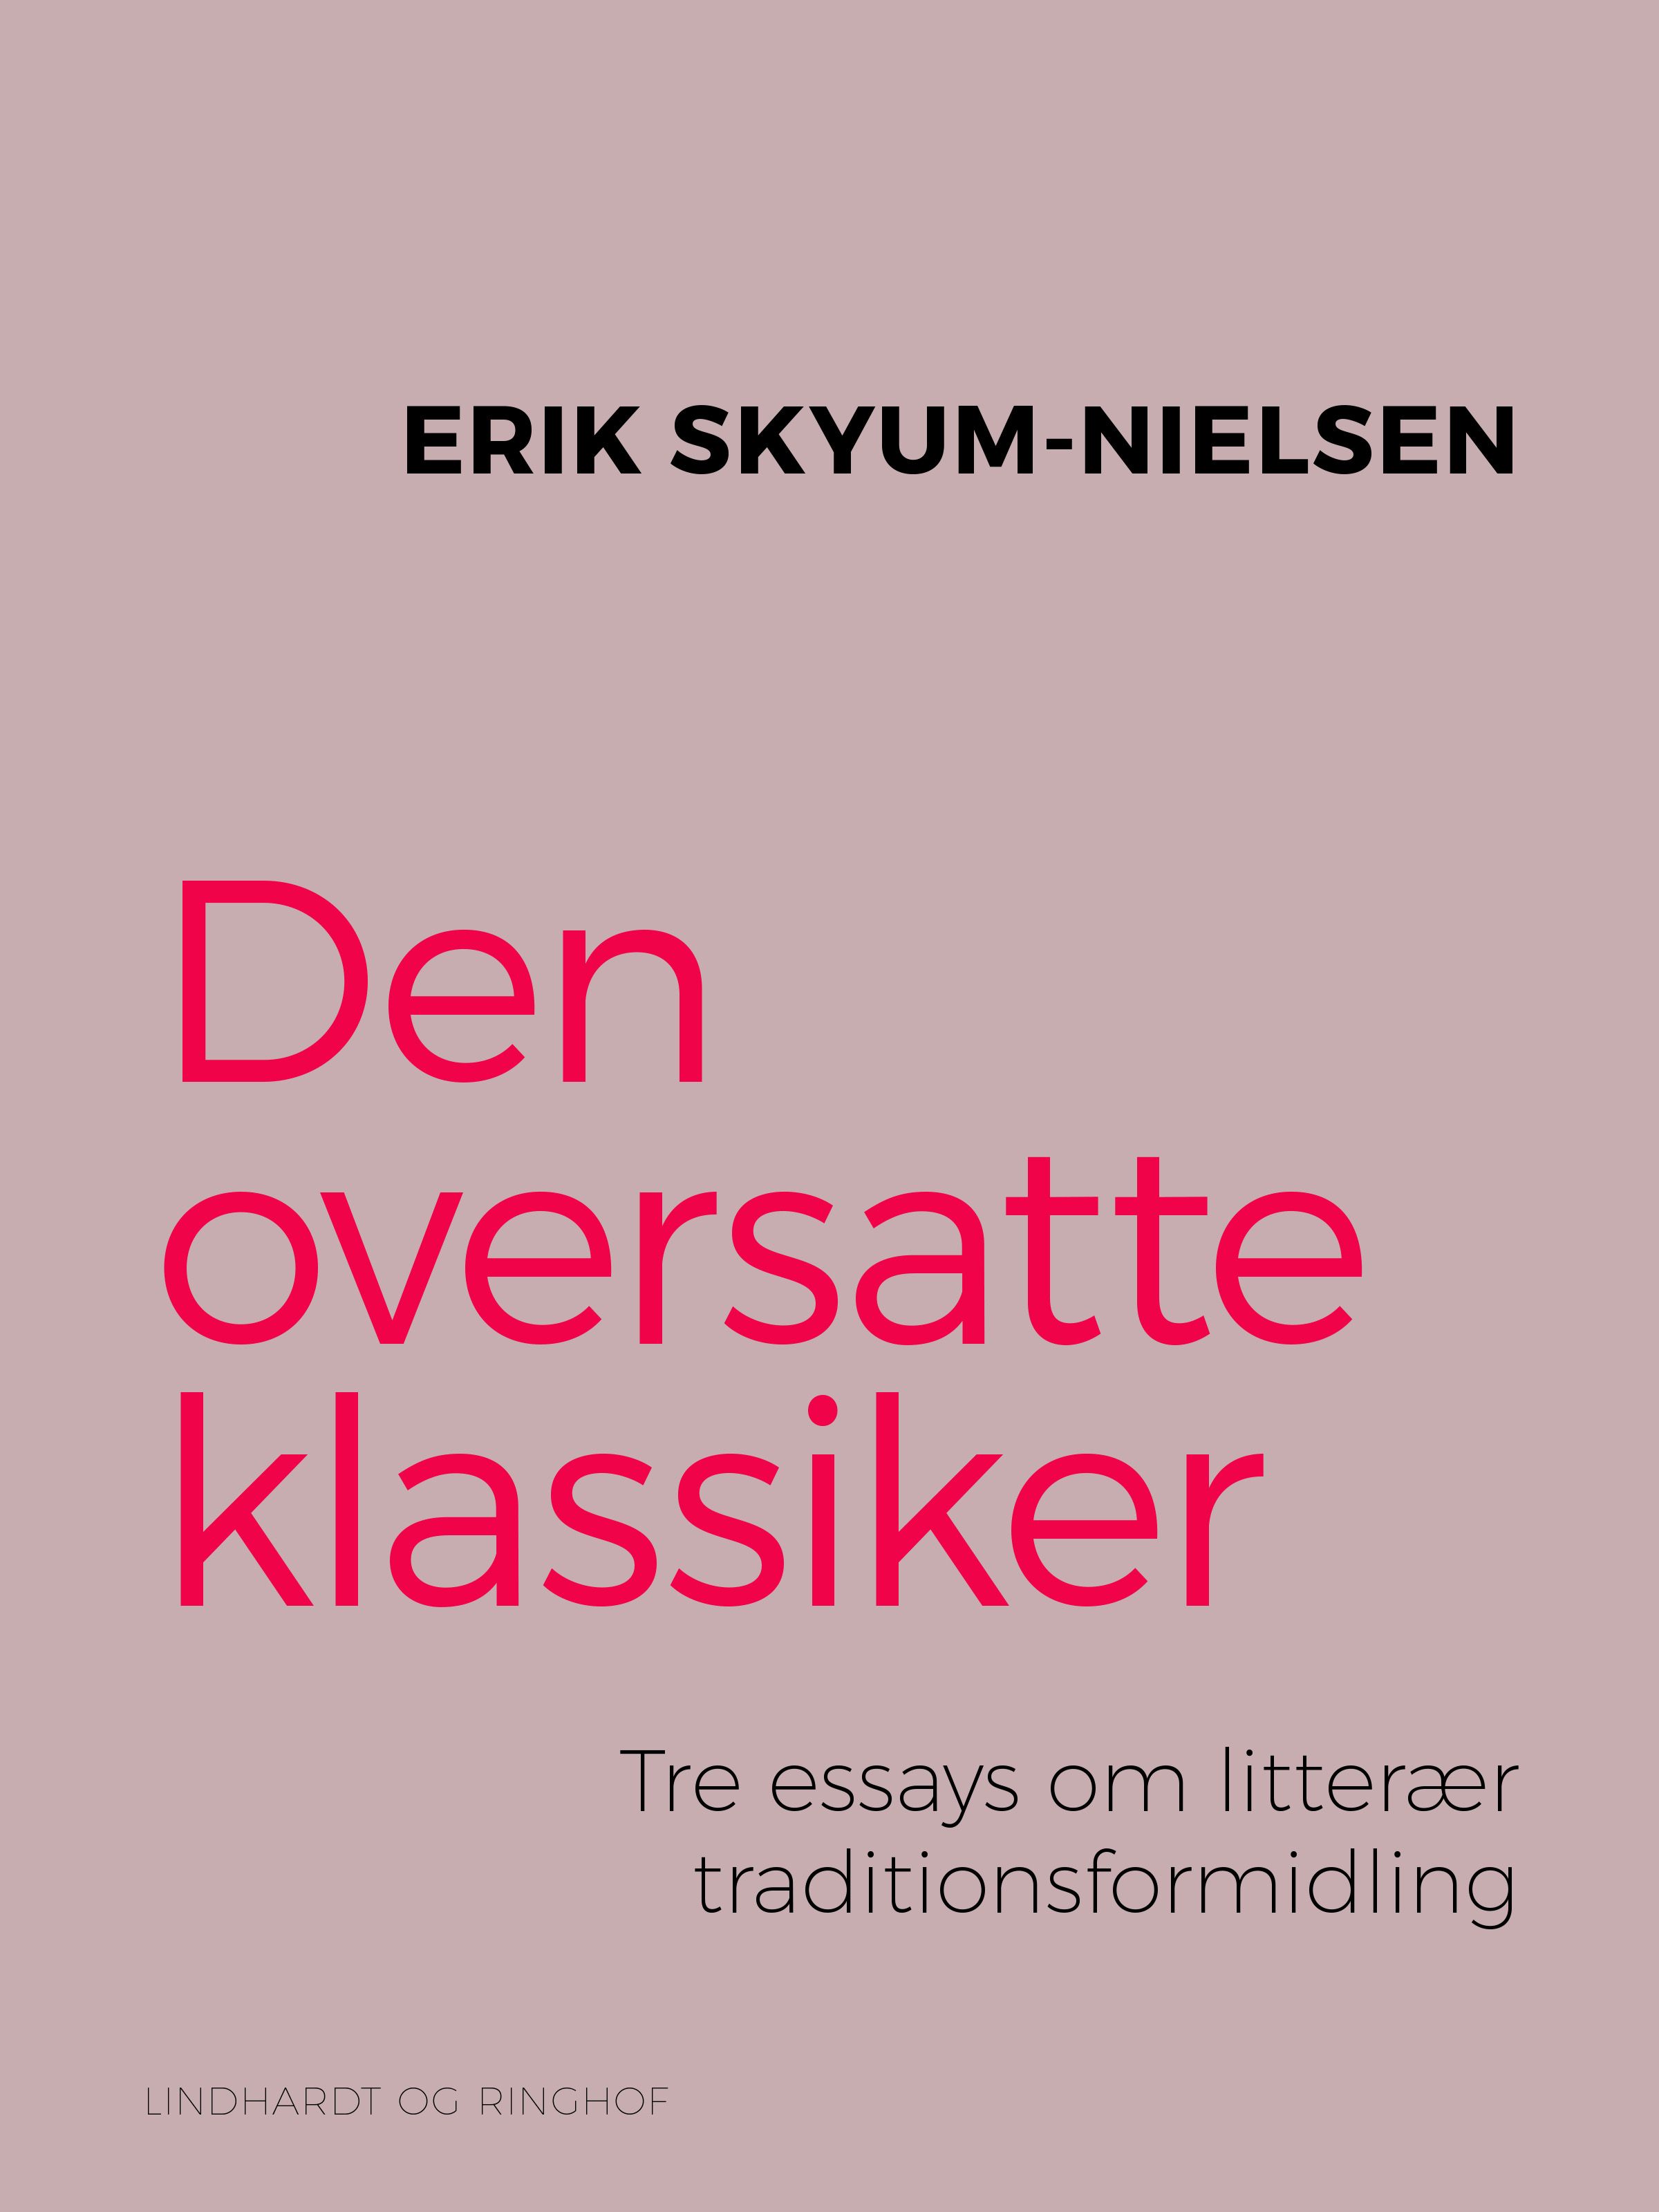 Den oversatte klassiker. Tre essays om litterær traditionsformidling, e-bok av Erik Skyum-Nielsen